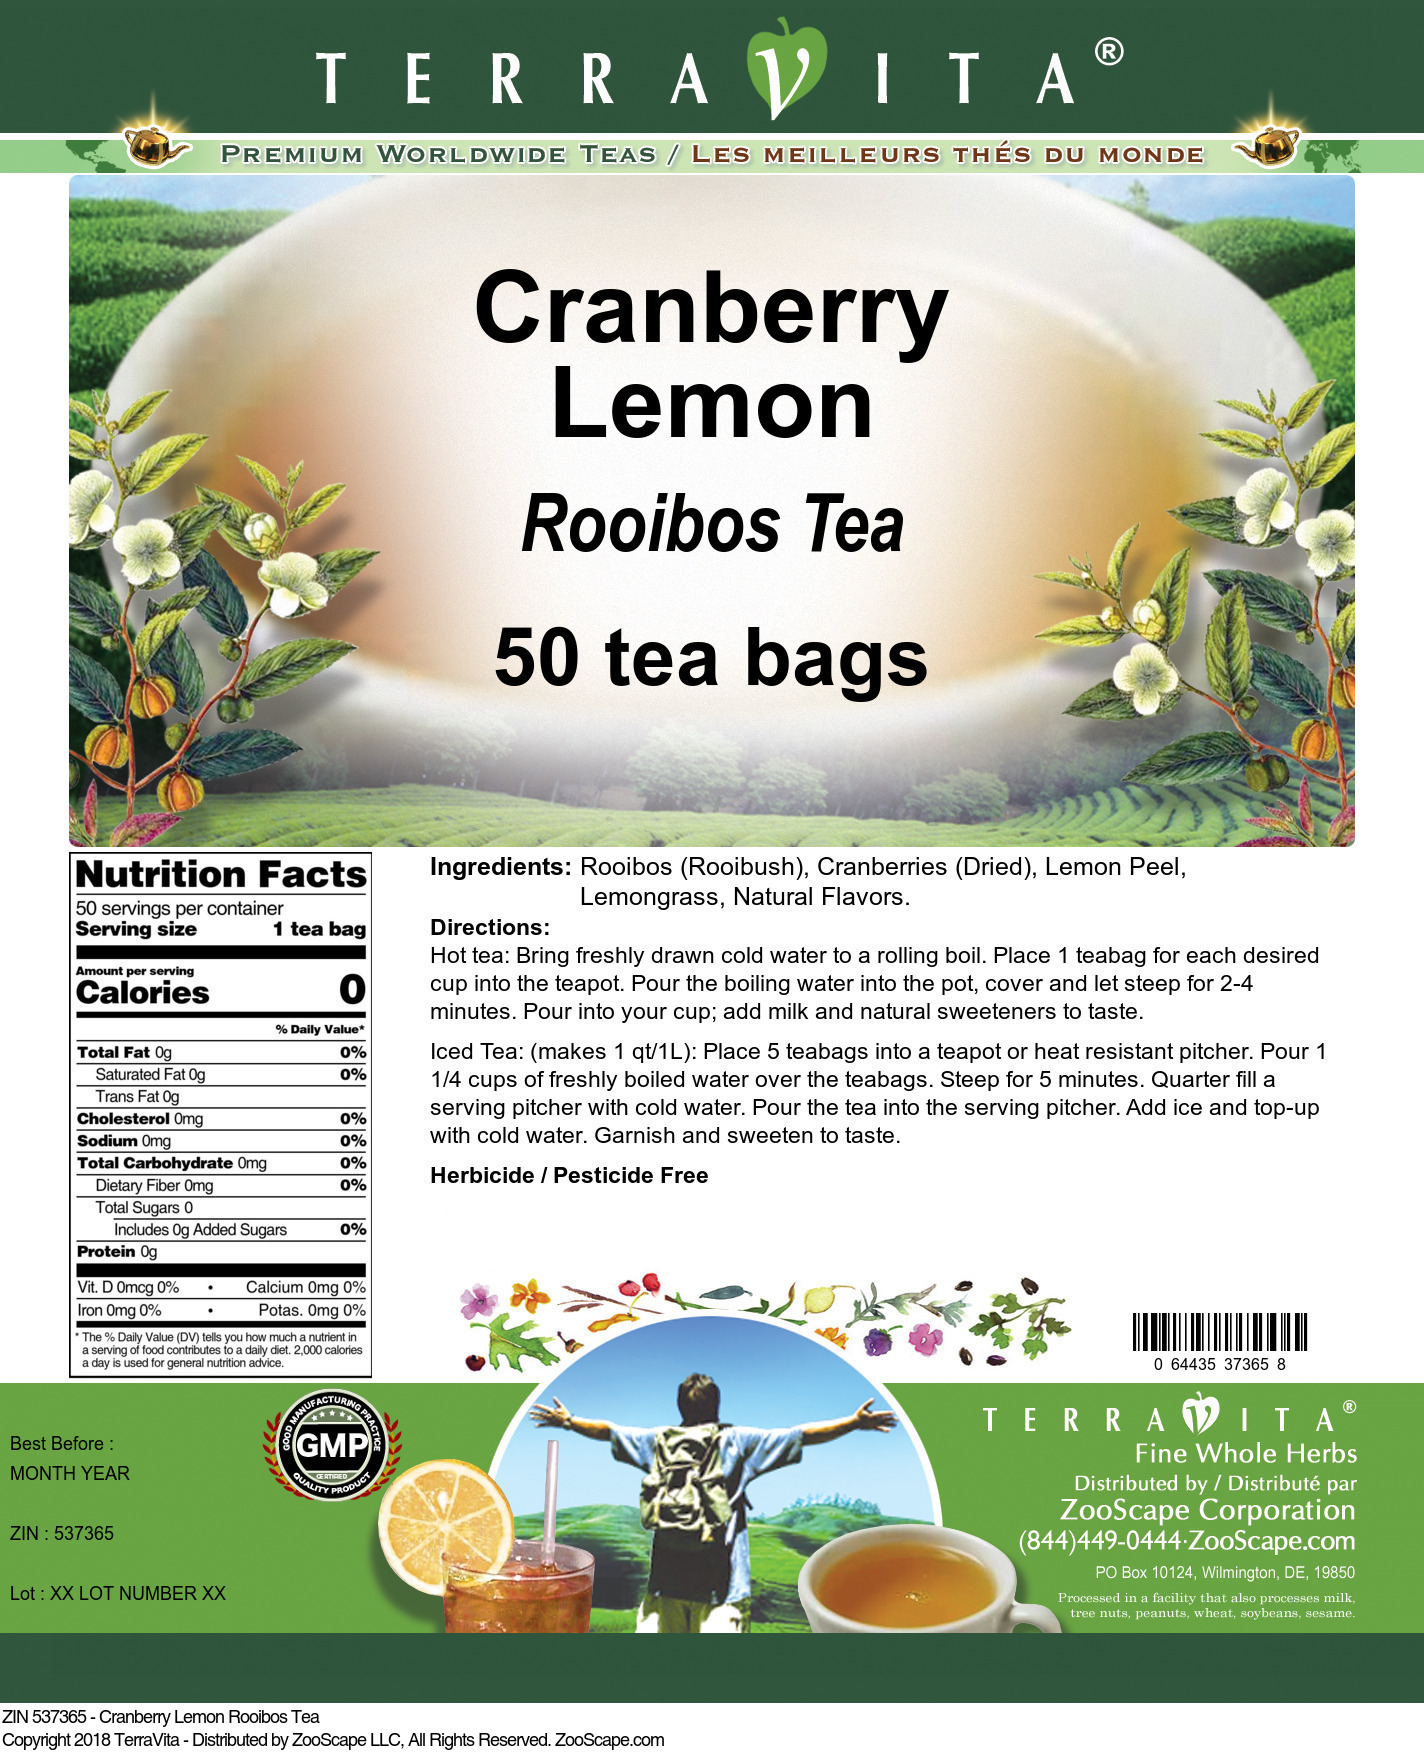 Cranberry Lemon Rooibos Tea - Label